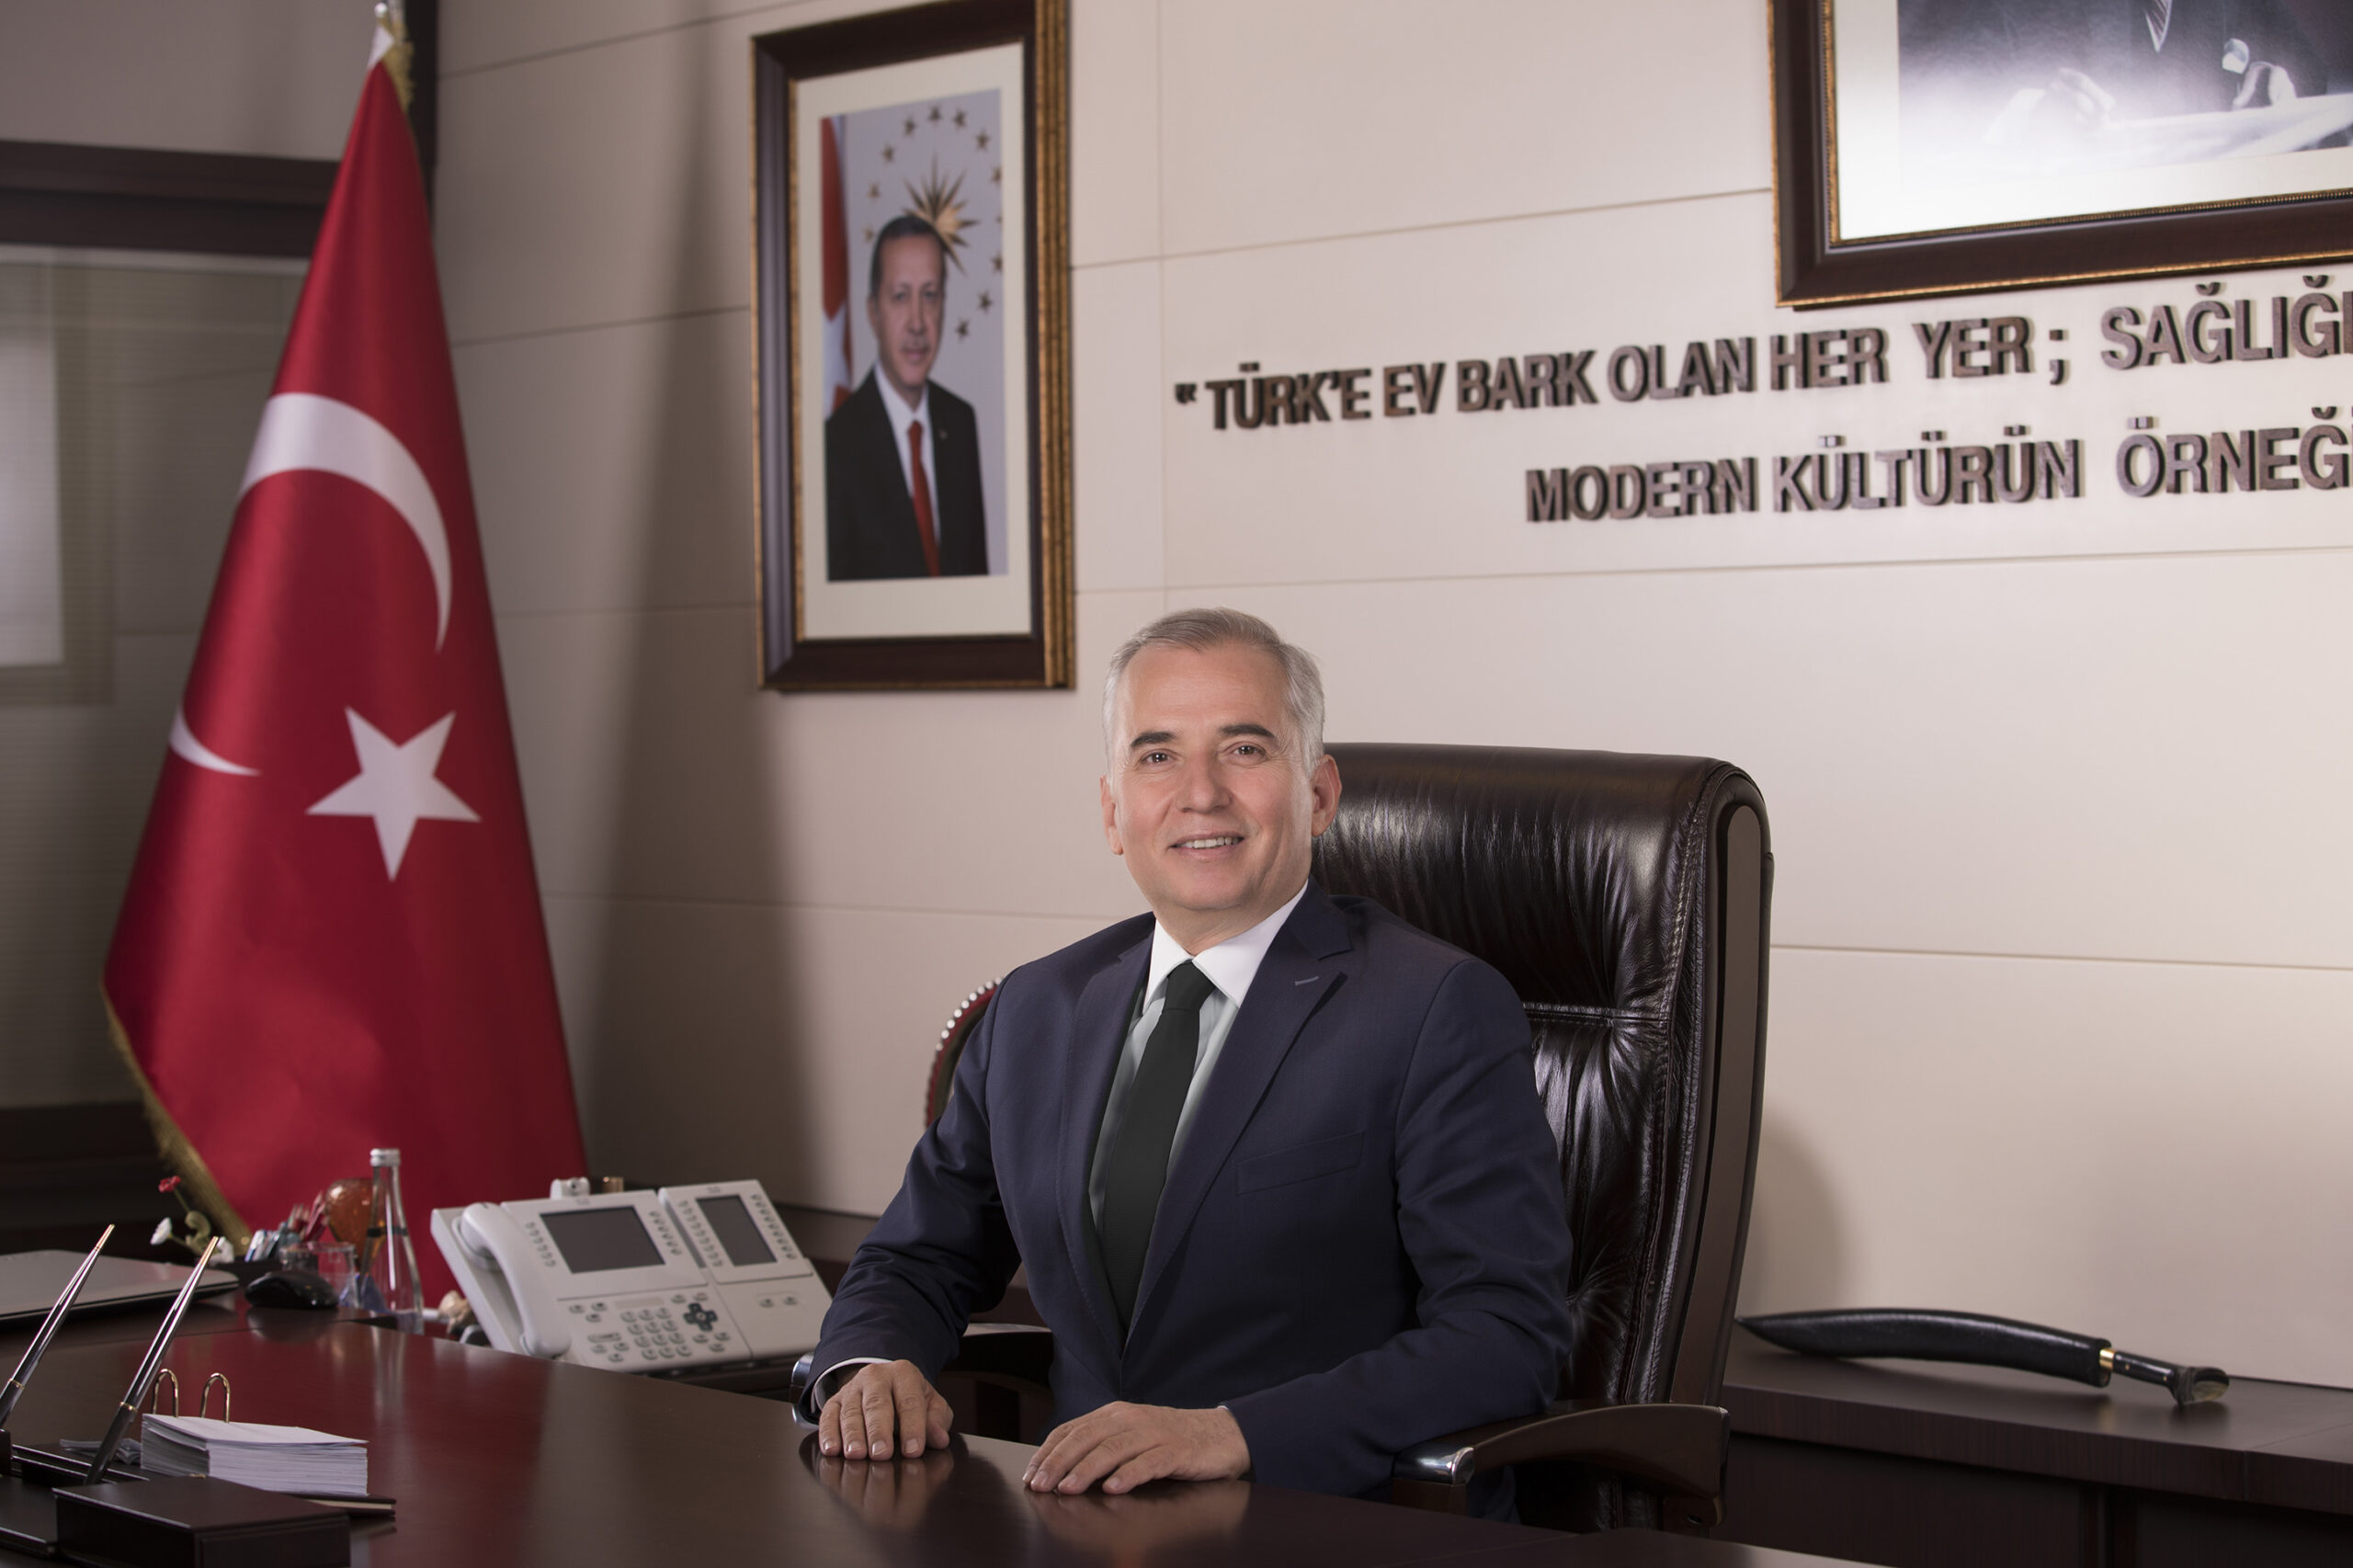 Denizli Buyuksehir Belediye Baskani Osman Zolan scaled - Başkan Osman Zolan'dan ramazan mesajı